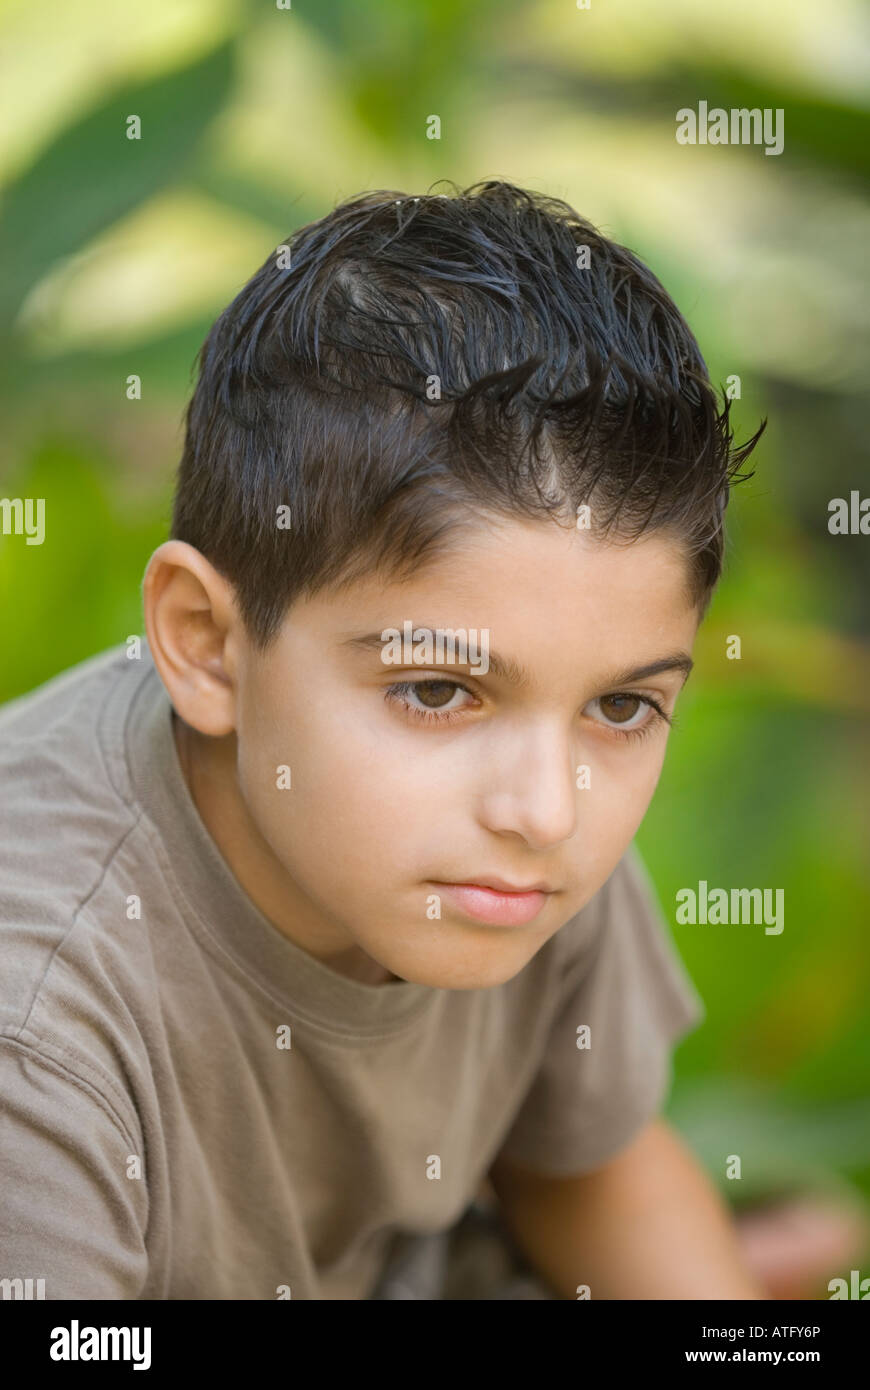 11 years old Ethnic boy looking away Stock Photo